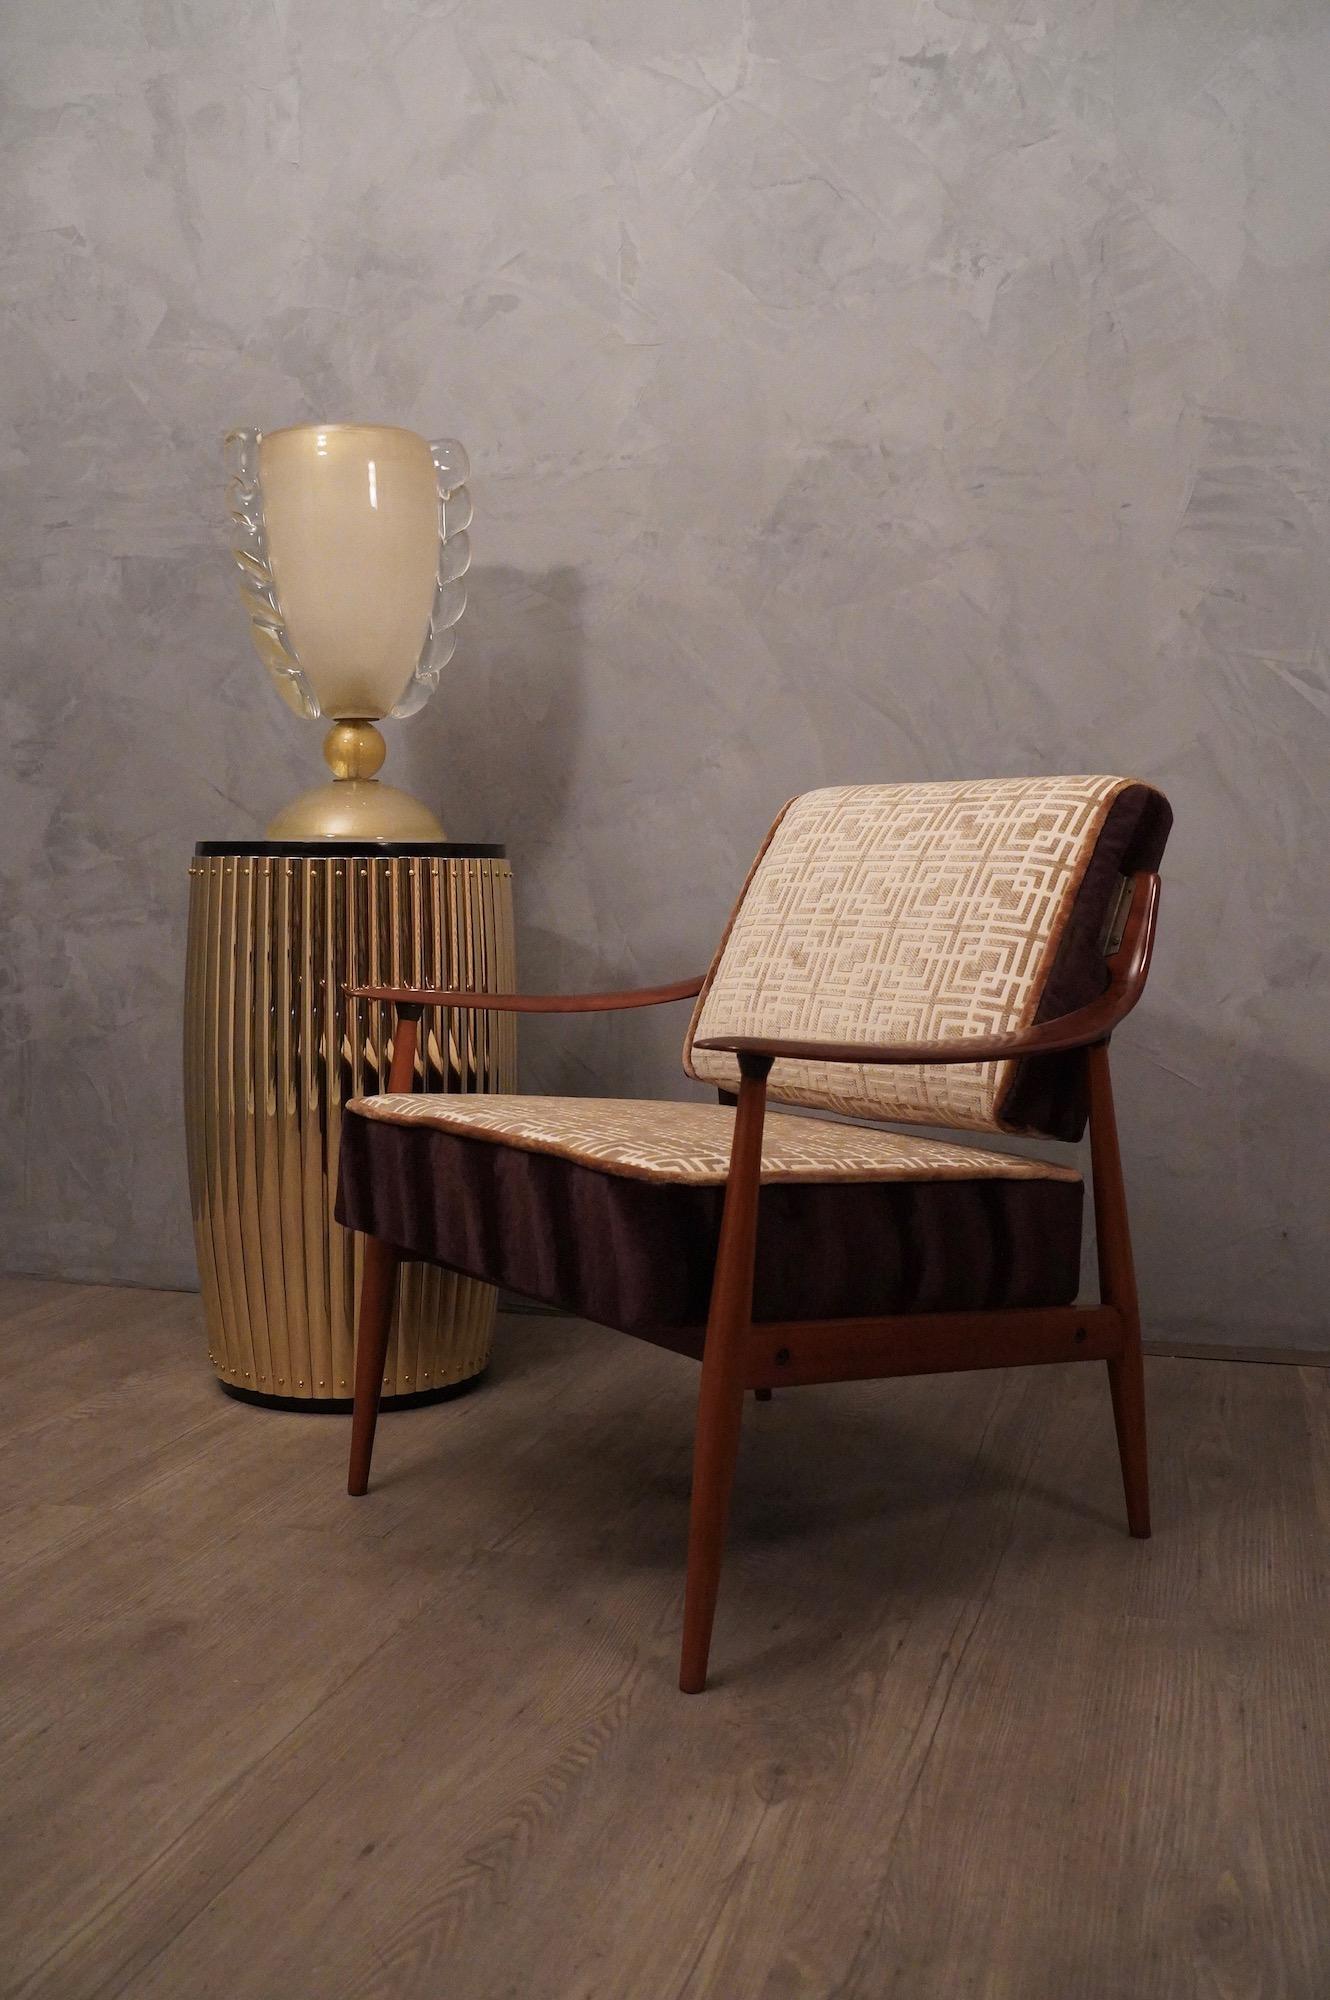 Sessel im klassischen italienischen Stil, aus Holz und eleganter Samtpolsterung mit geometrischen Mustern. Beachten Sie die Form der seitlichen Stützen der Rückenlehne und die Kontur der Armlehnen.

Sessel aus einer Struktur aus poliertem